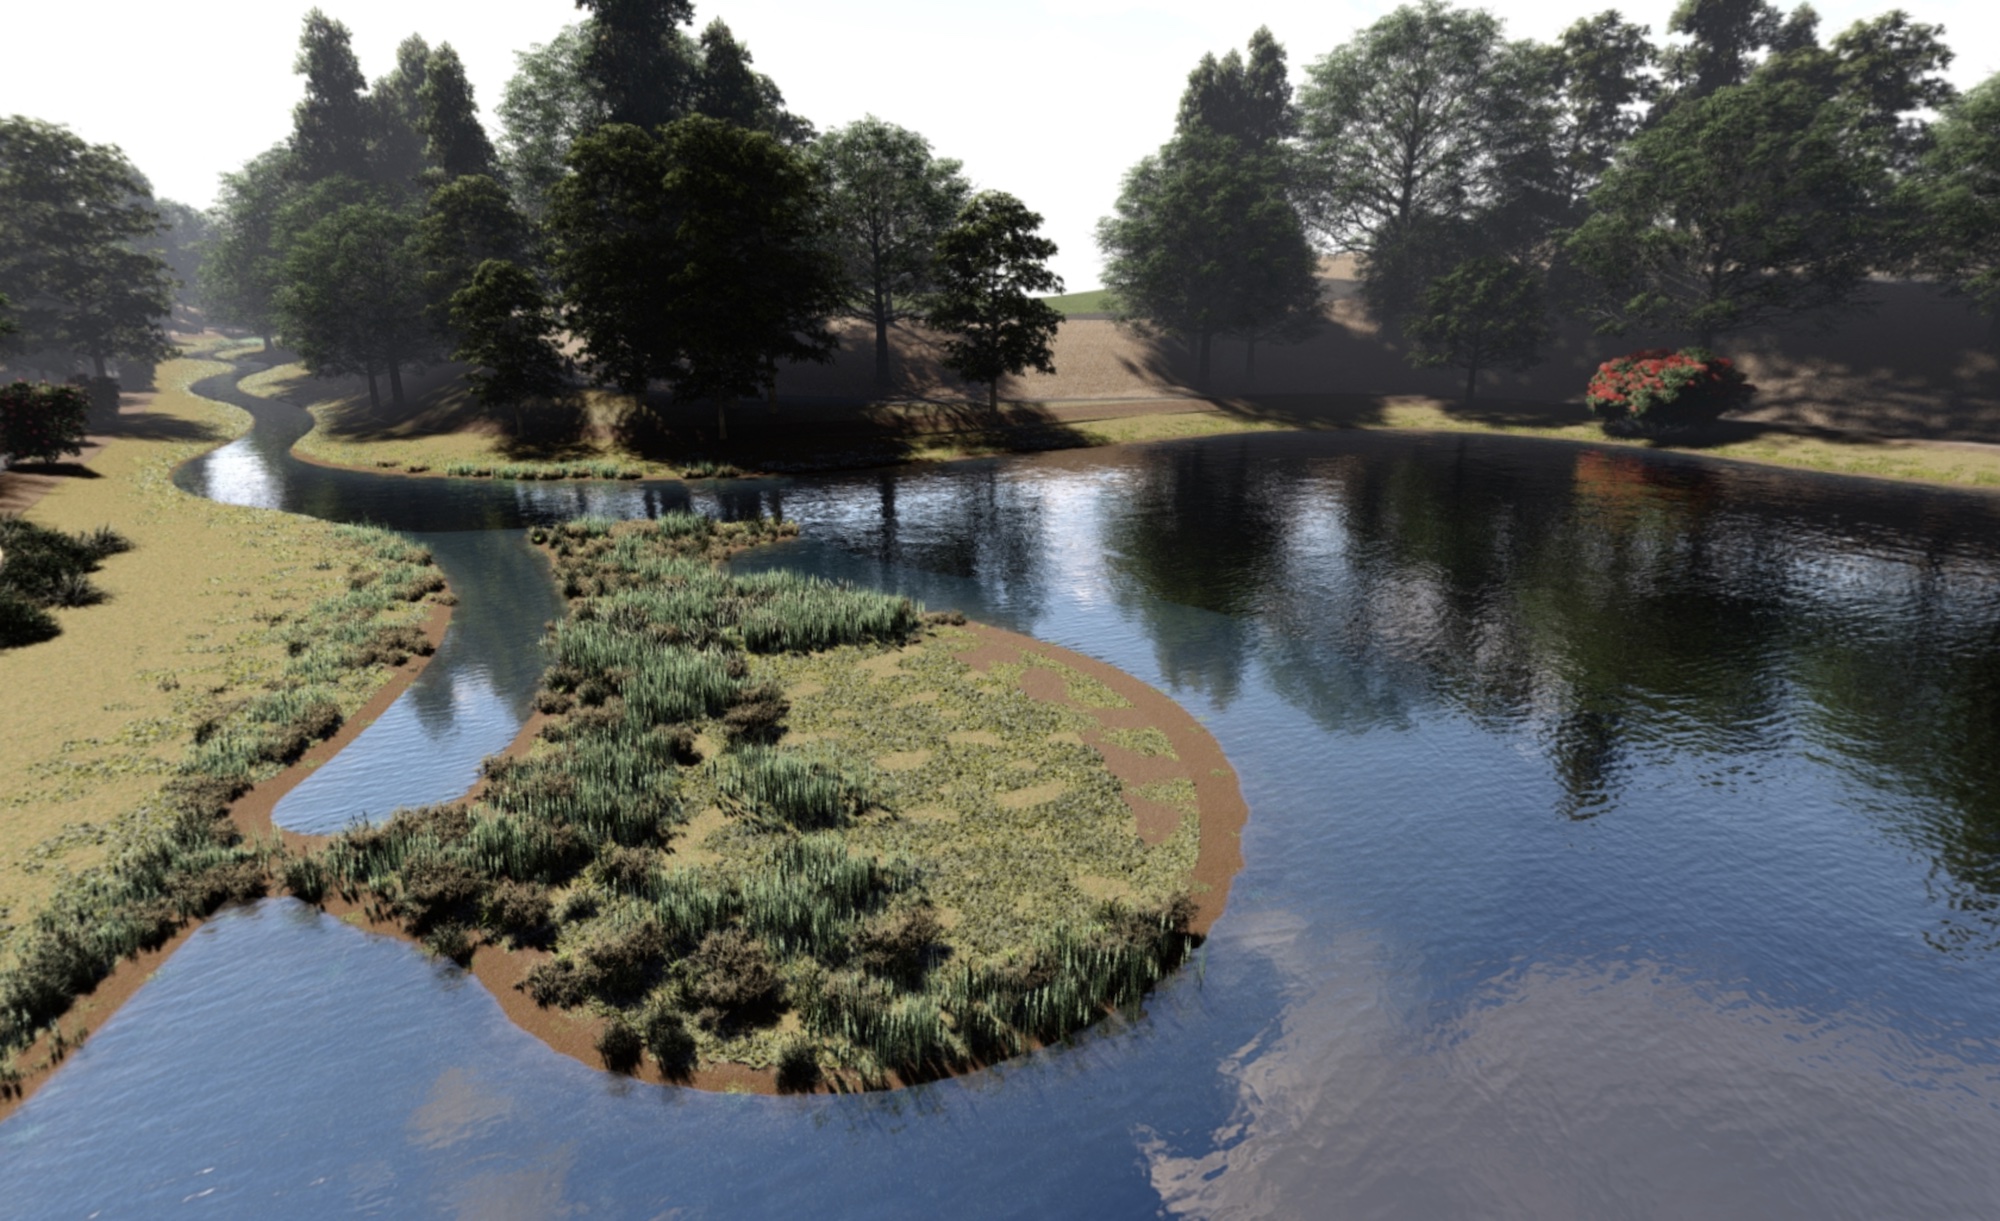 Rendering of Arboretum waterway